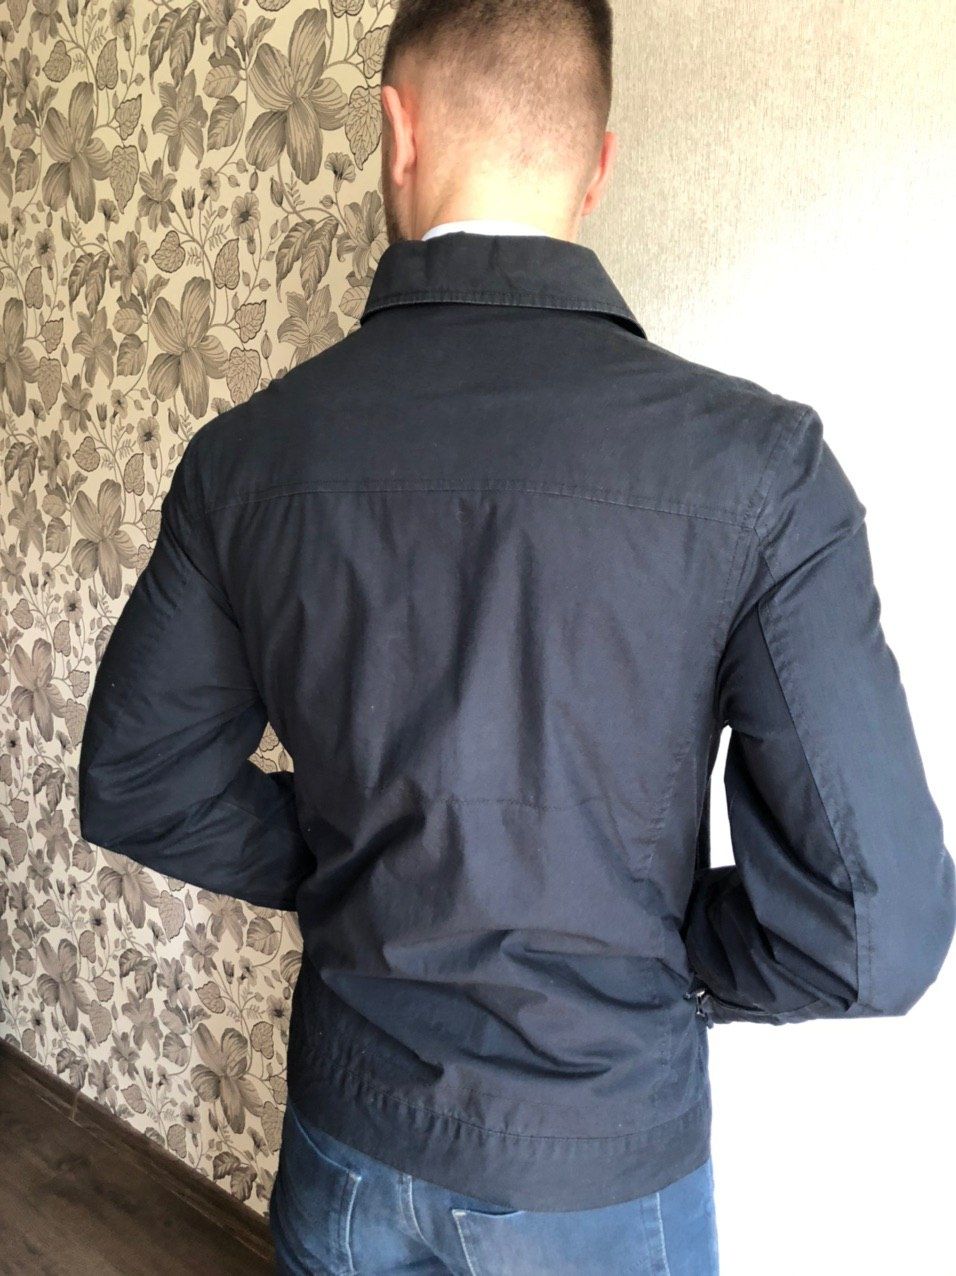 Мужская куртка / ветровка весна - осень (темно-синяя)